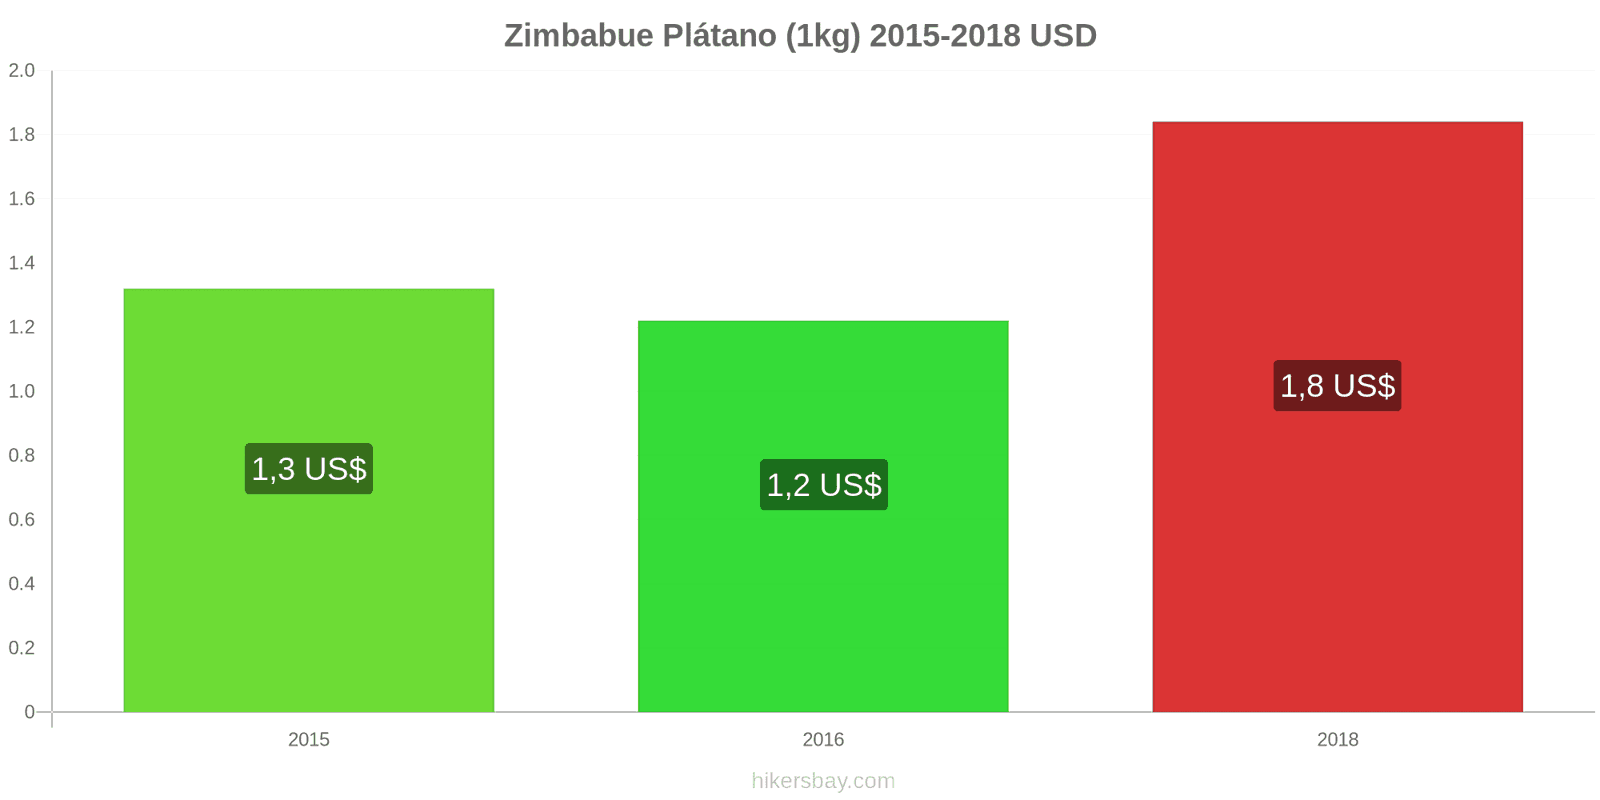 Zimbabue cambios de precios Plátanos (1kg) hikersbay.com